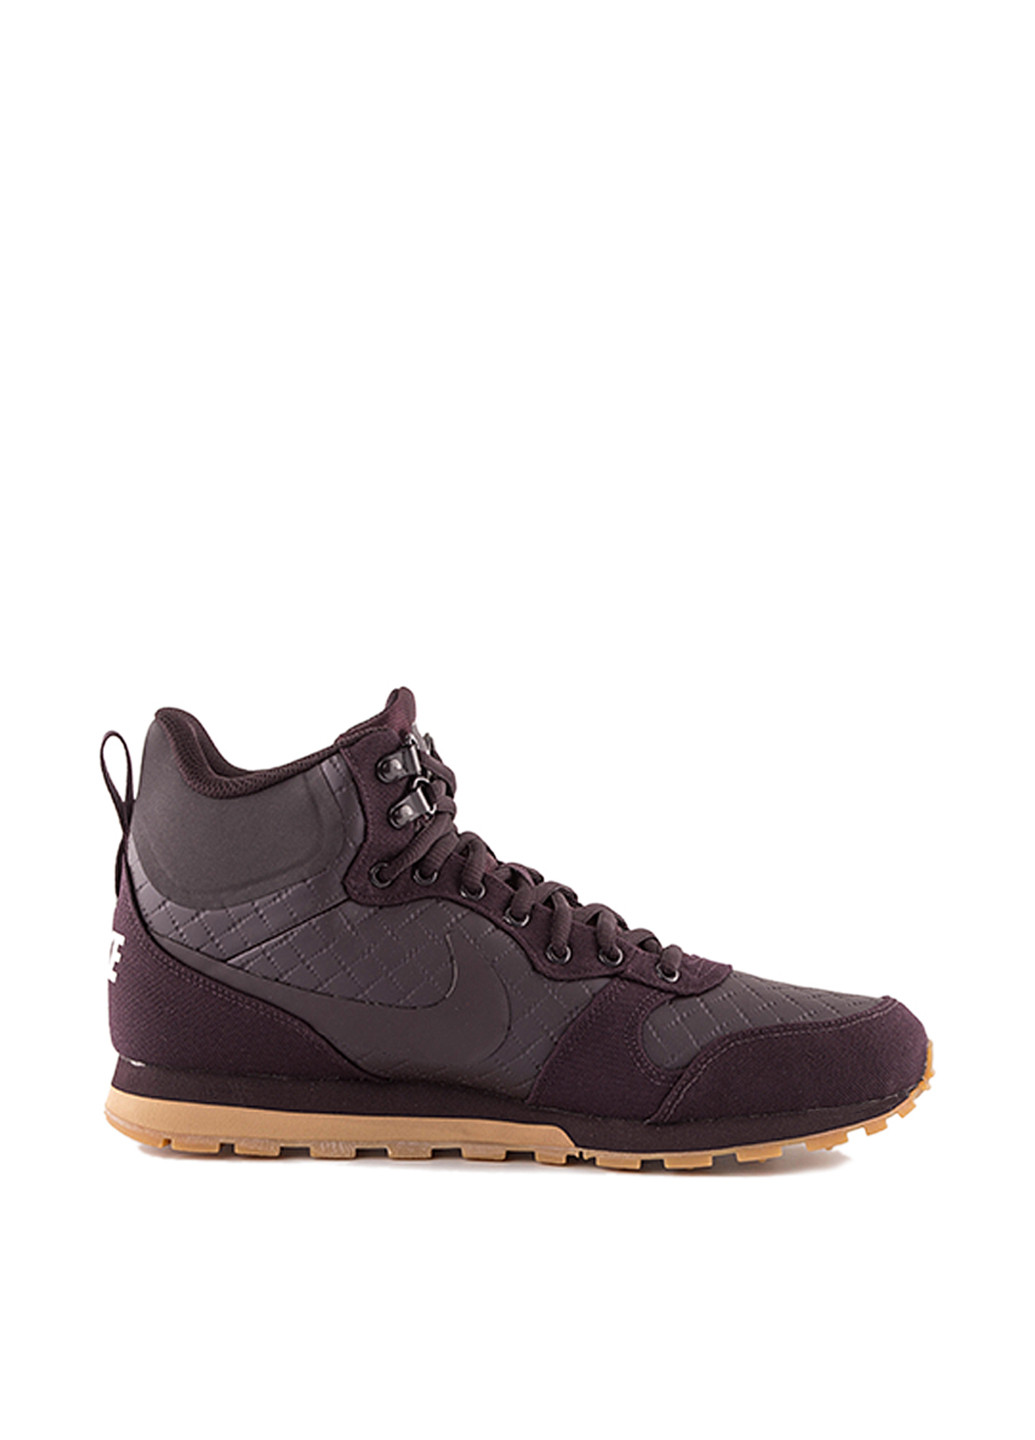 Темно-бордовые всесезонные кроссовки Nike Men'sMD Runner 2 Mid Premium Shoe